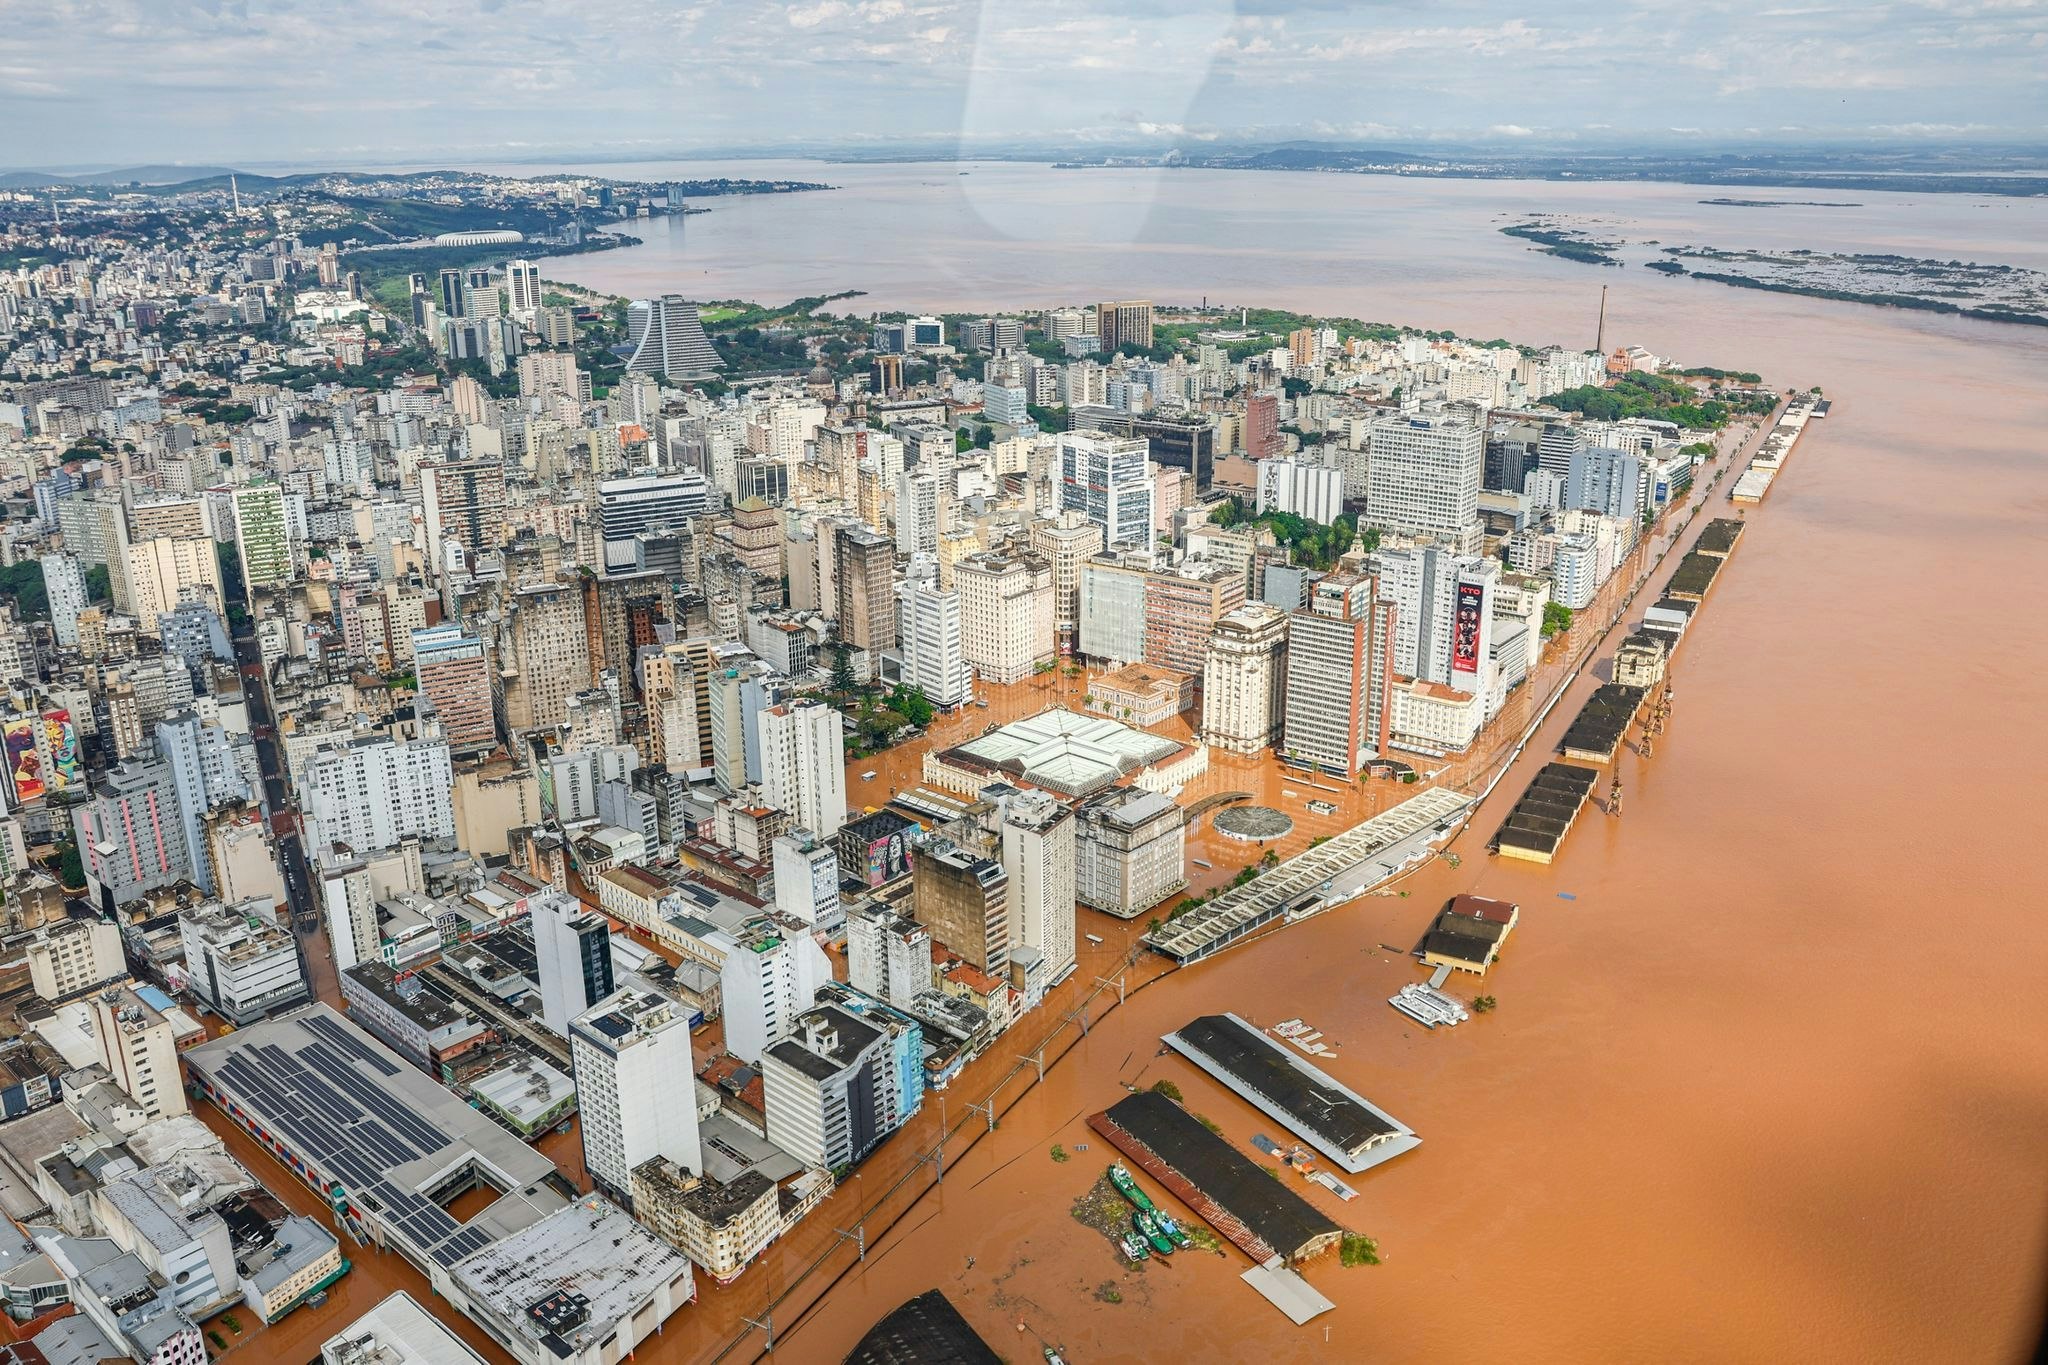 unwetter: mindestens 90 tote bei überschwemmungen im süden brasiliens